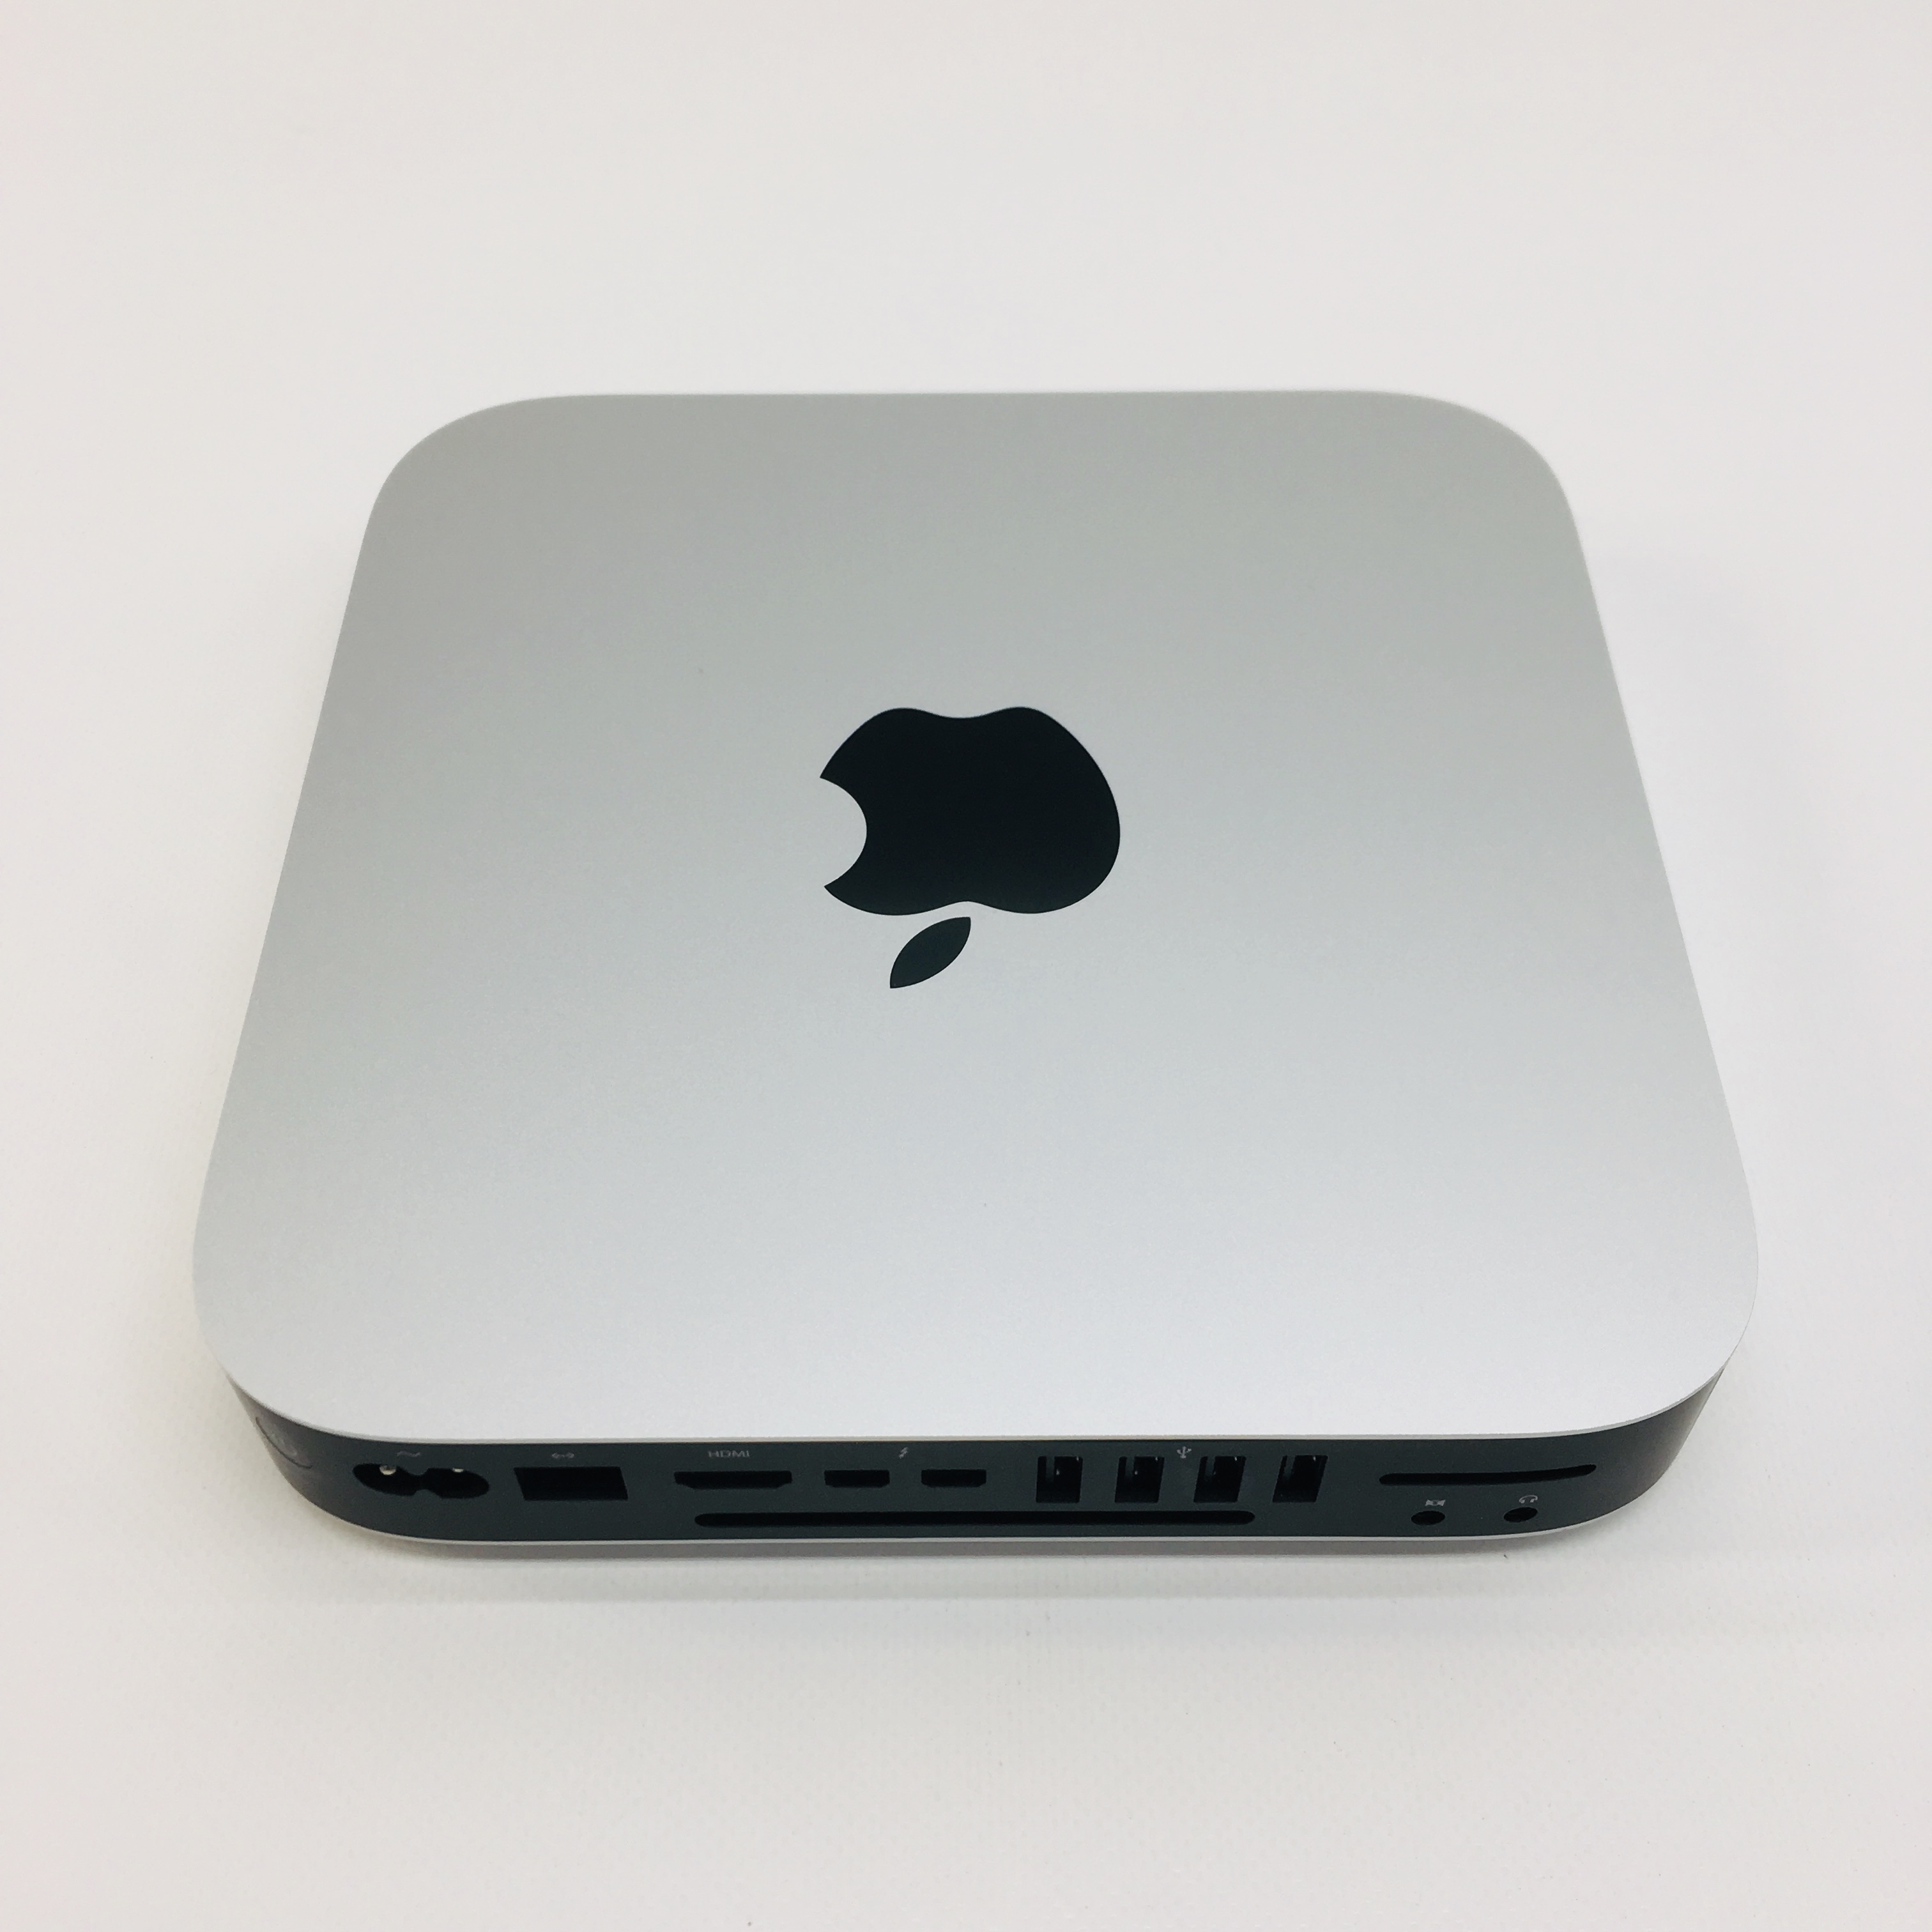 2012 mac mini quad core i7